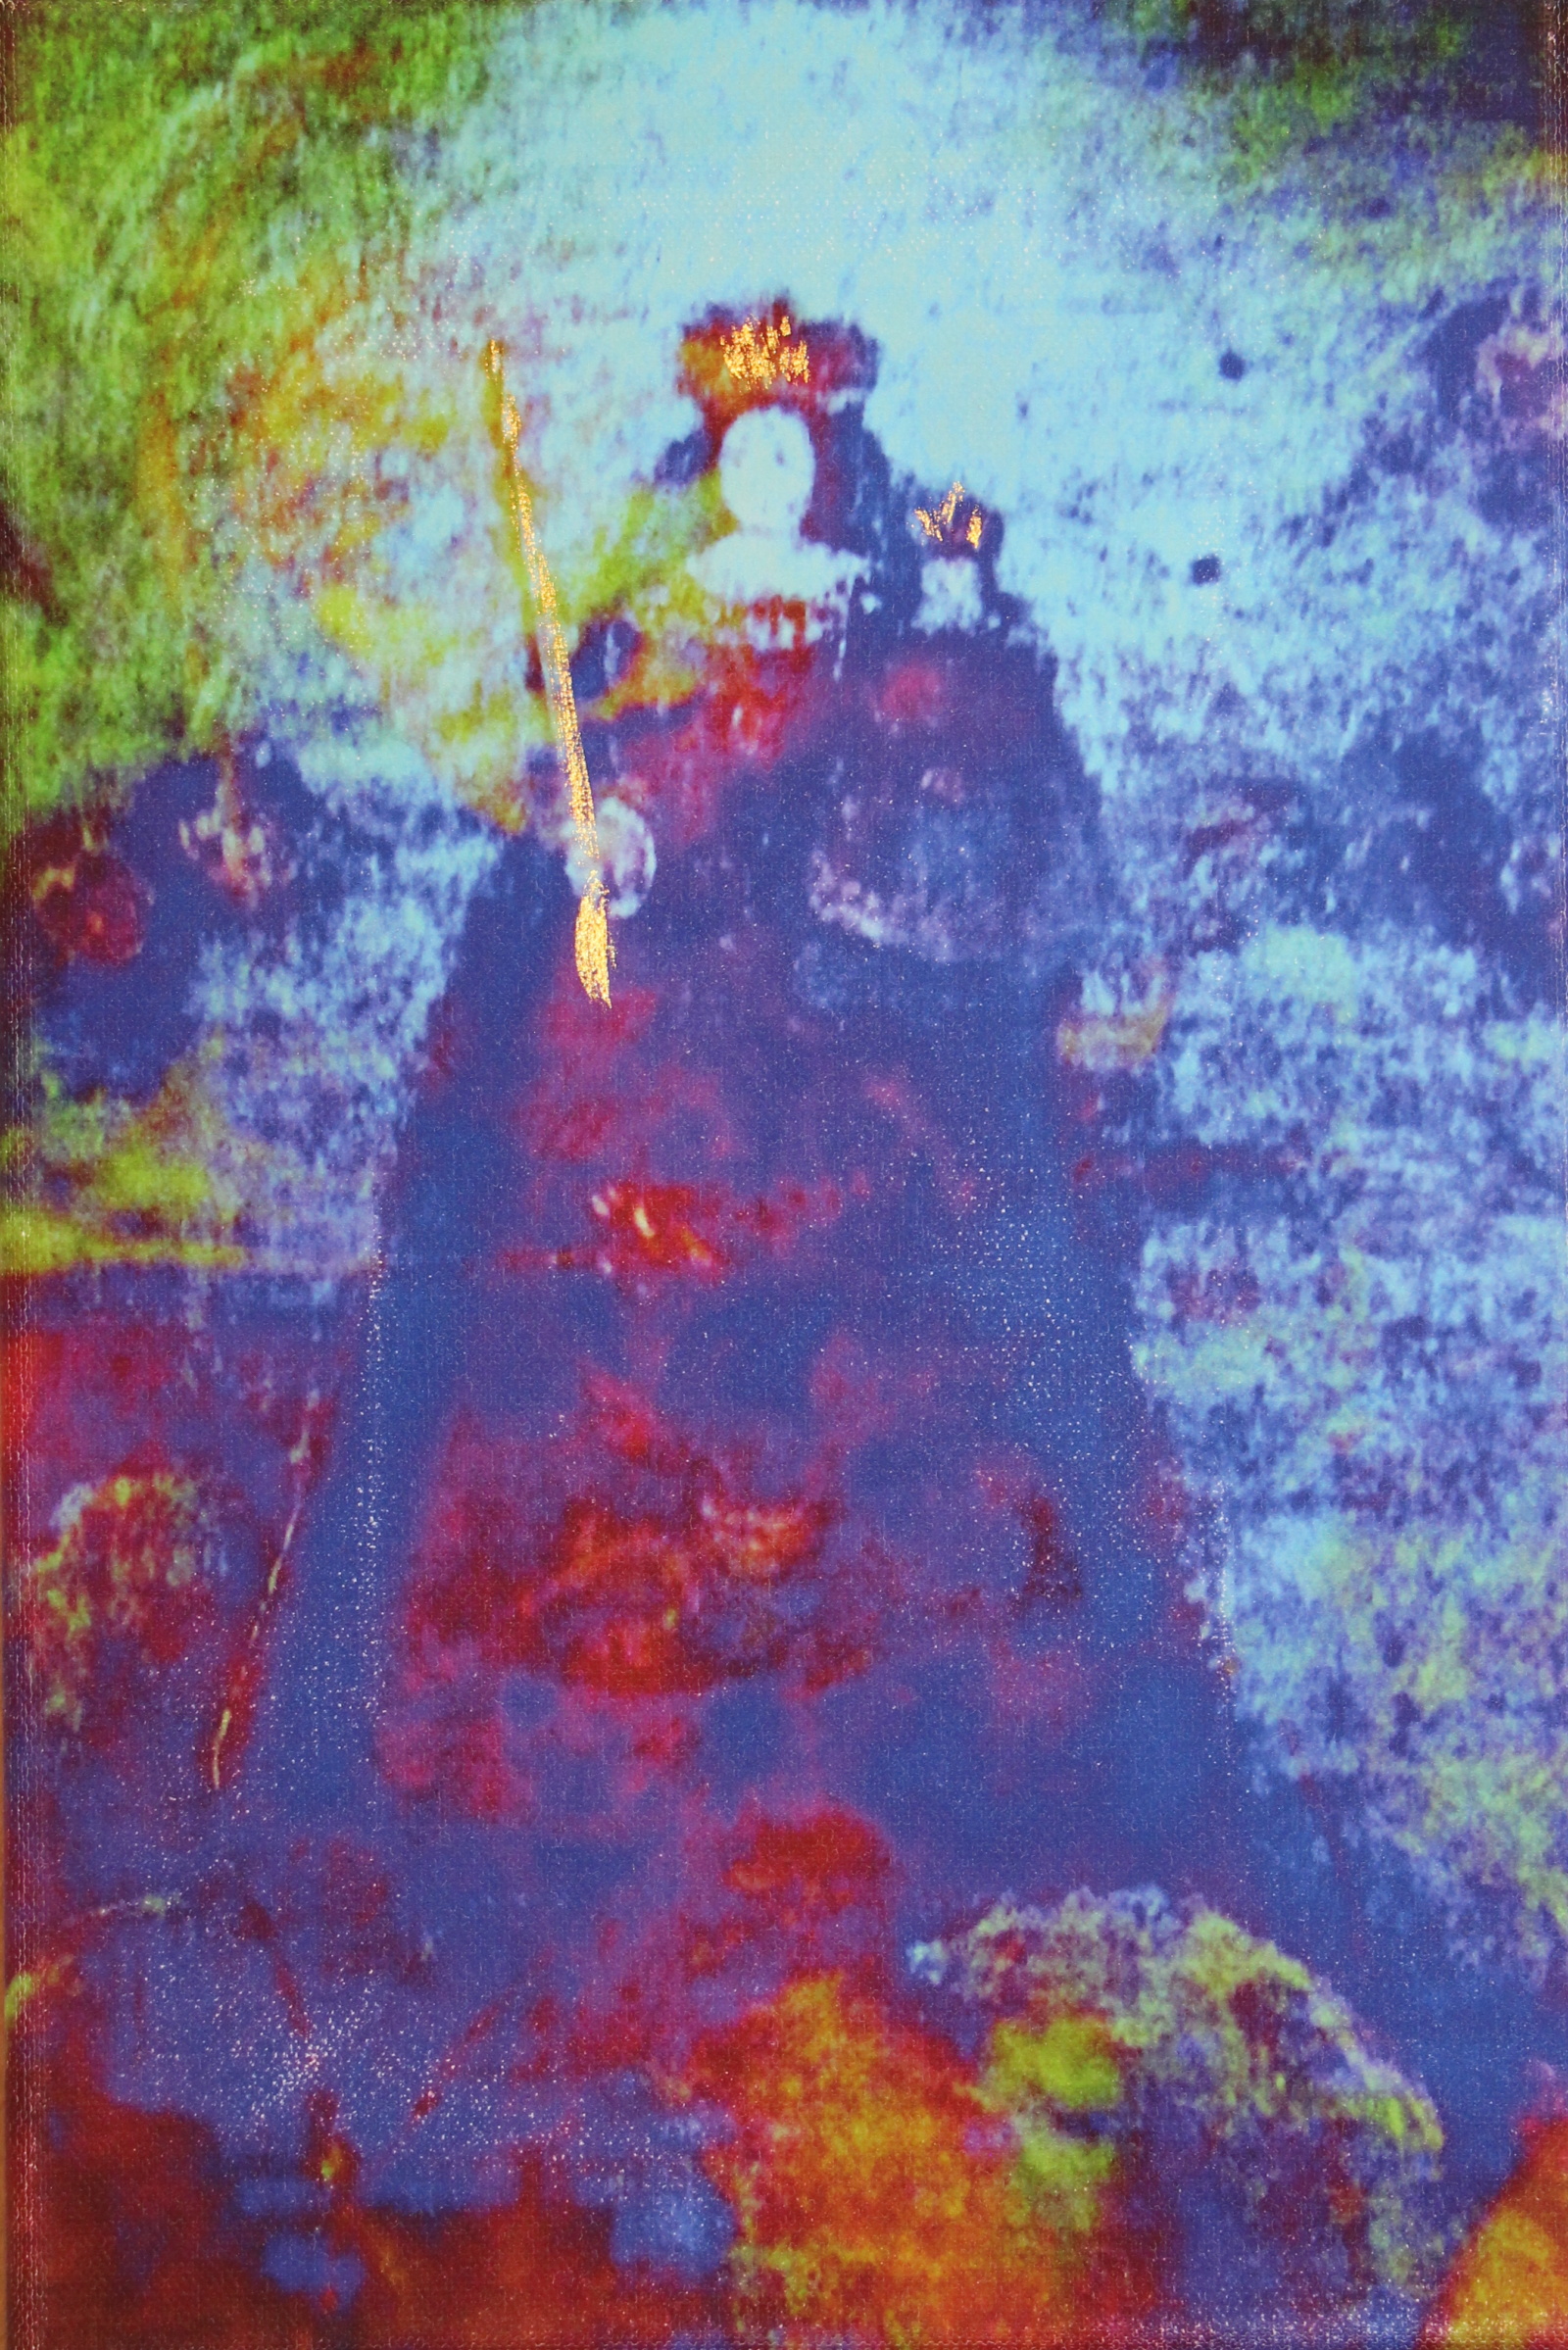 Annelies Štrba, Madonna, Nr. 016, 2014
Pigment print on canvas, mixed media
30 x 20 cm
Unique